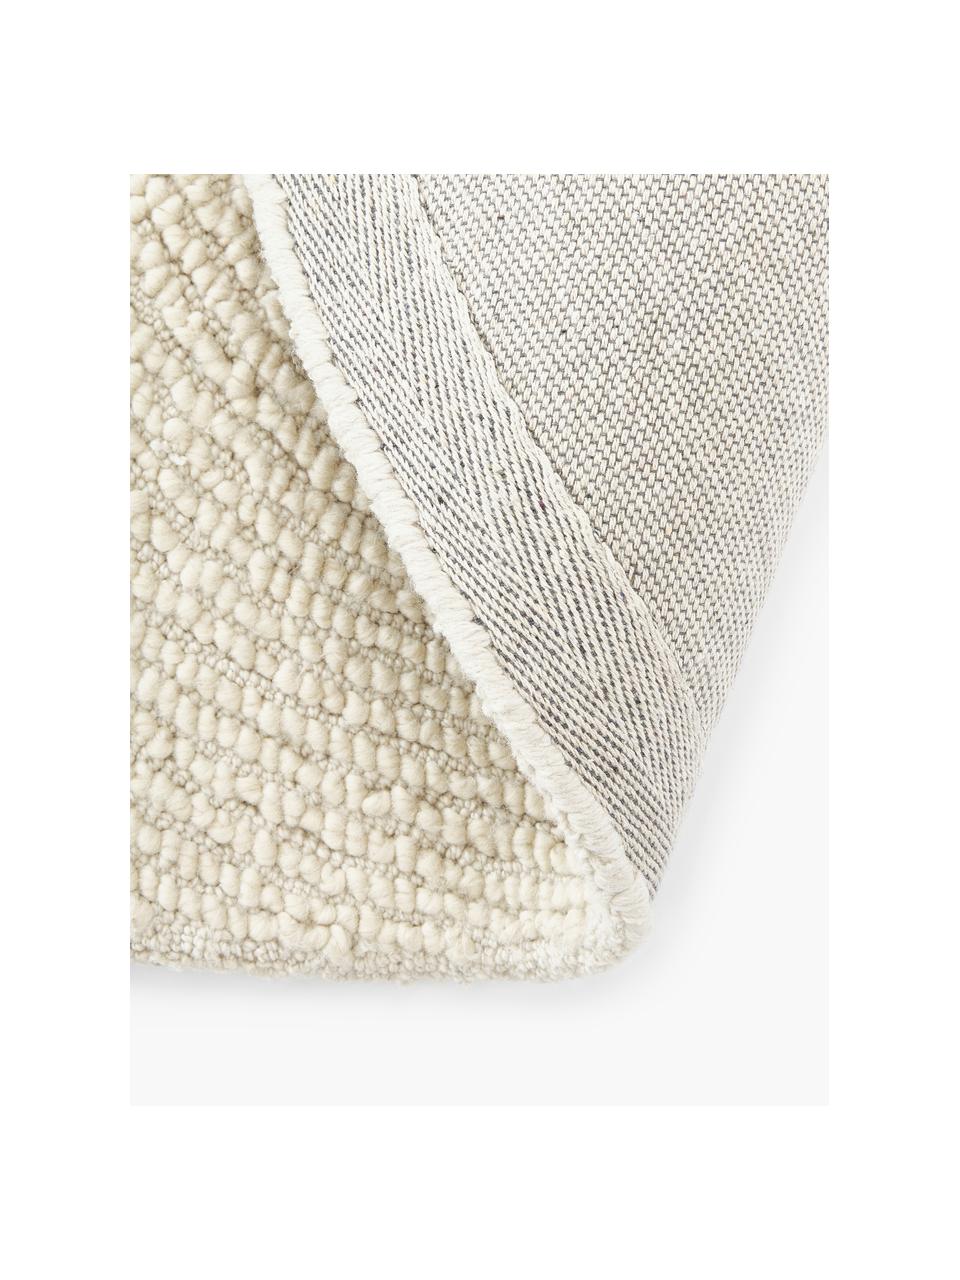 Runder Handgetufteter Kurzflor-Teppich Eleni aus recycelten Materialien, Flor: 100 % Polyester, Beige, Ø 120 cm